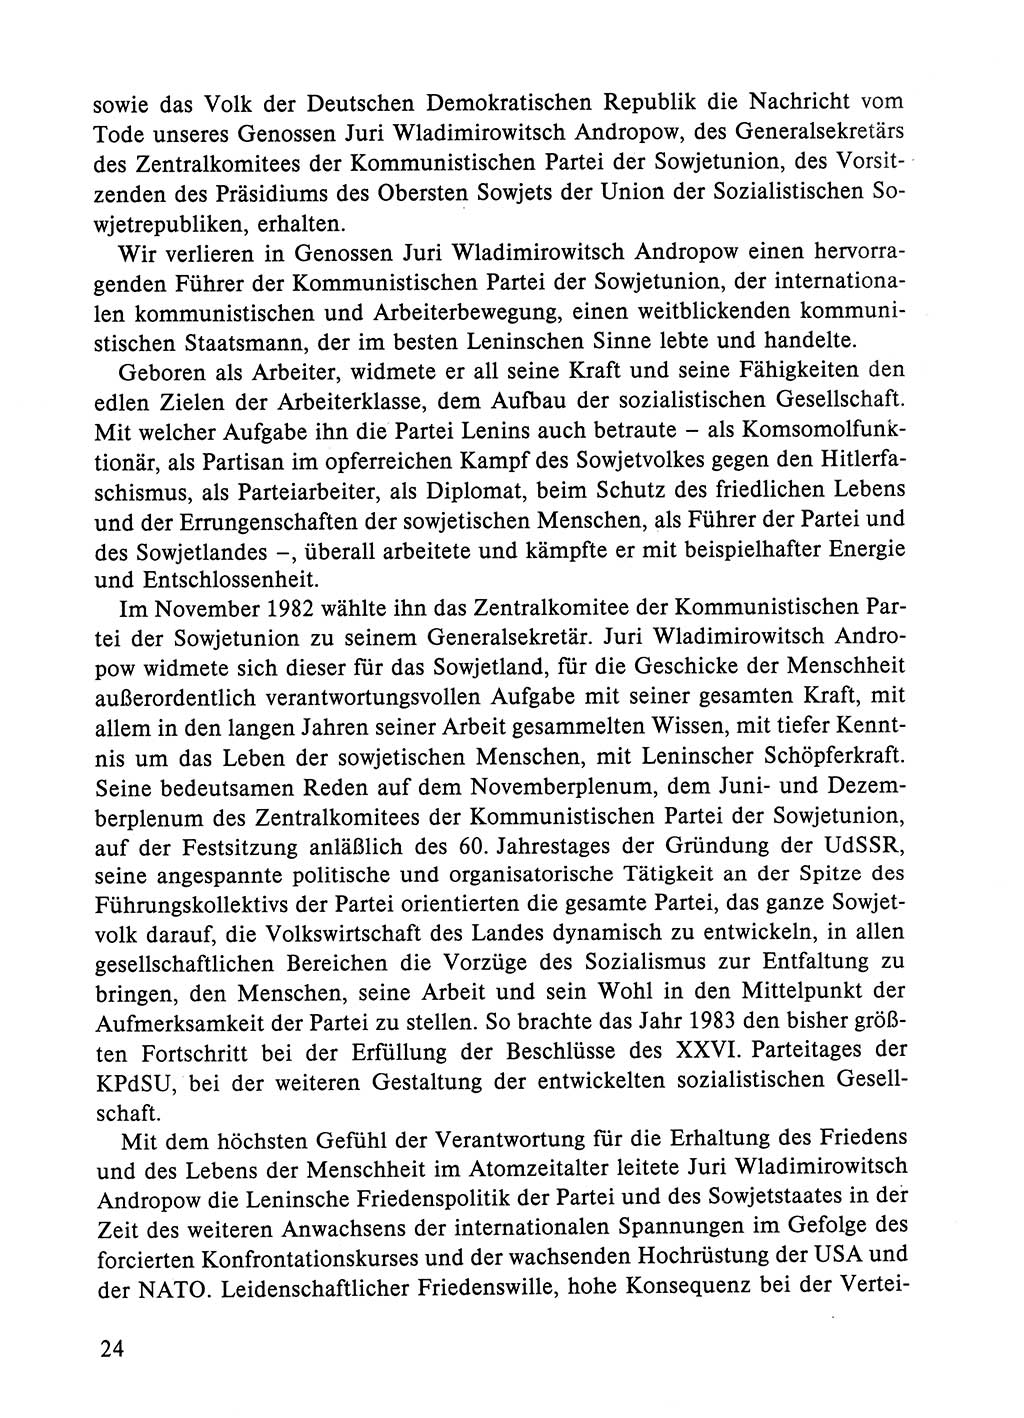 Dokumente der Sozialistischen Einheitspartei Deutschlands (SED) [Deutsche Demokratische Republik (DDR)] 1984-1985, Seite 24 (Dok. SED DDR 1984-1985, S. 24)